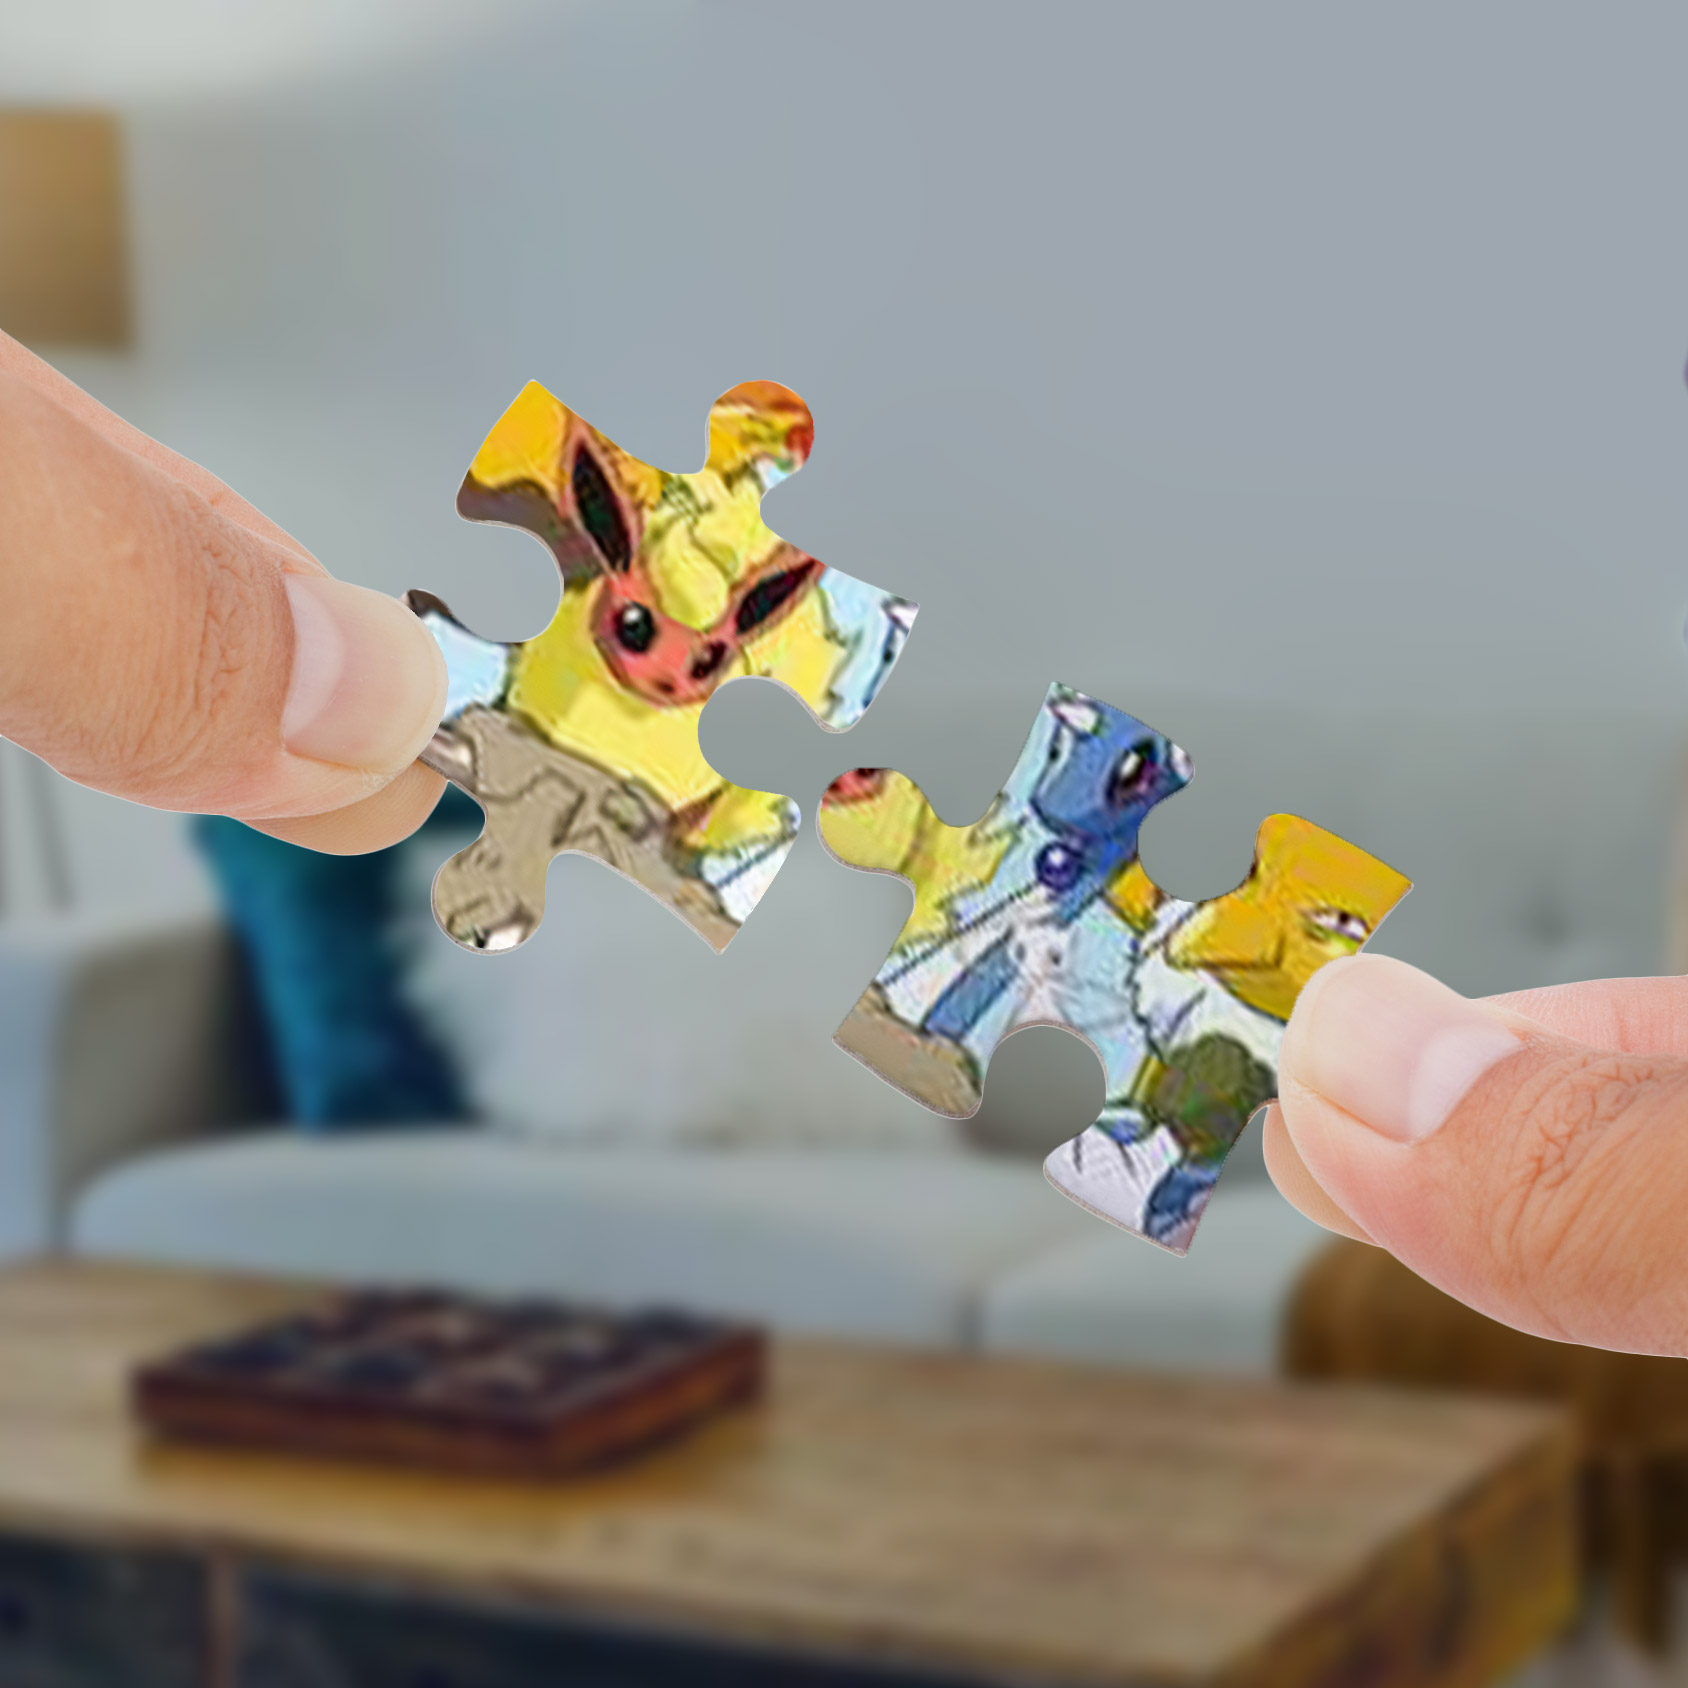 Pokémon Puzzle - 1000 Teile